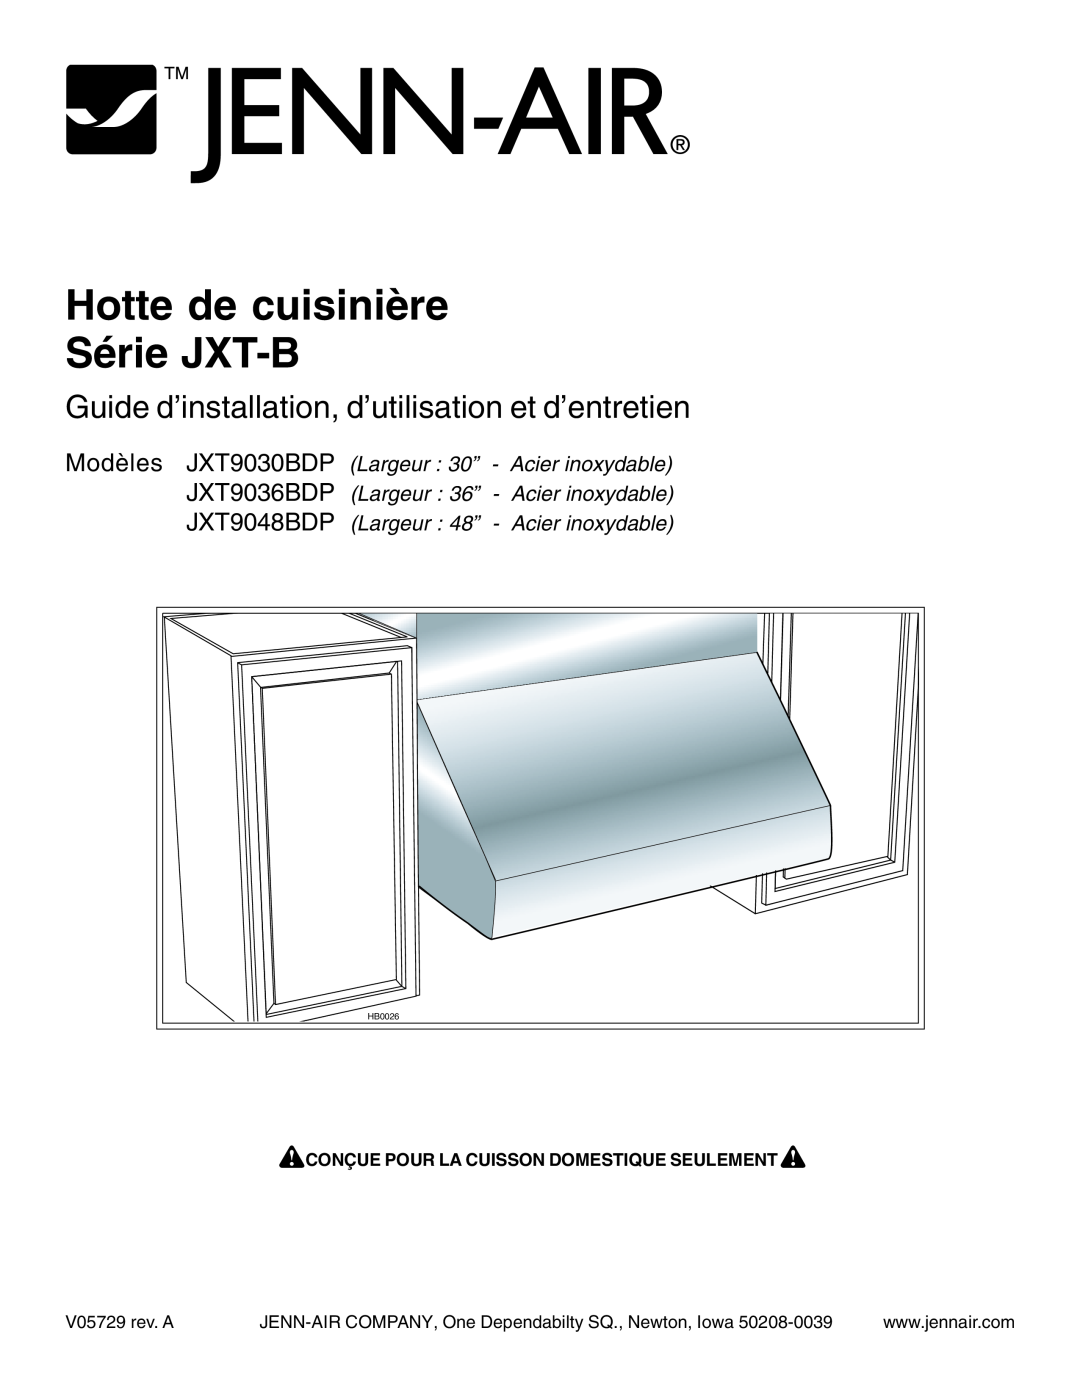 Jenn-Air Modèles JXT9030BDP Largeur 30”, Acier inoxydable, JXT9036BDP Largeur 36”, JXT9048BDP Largeur 48”, Série JXT-B 